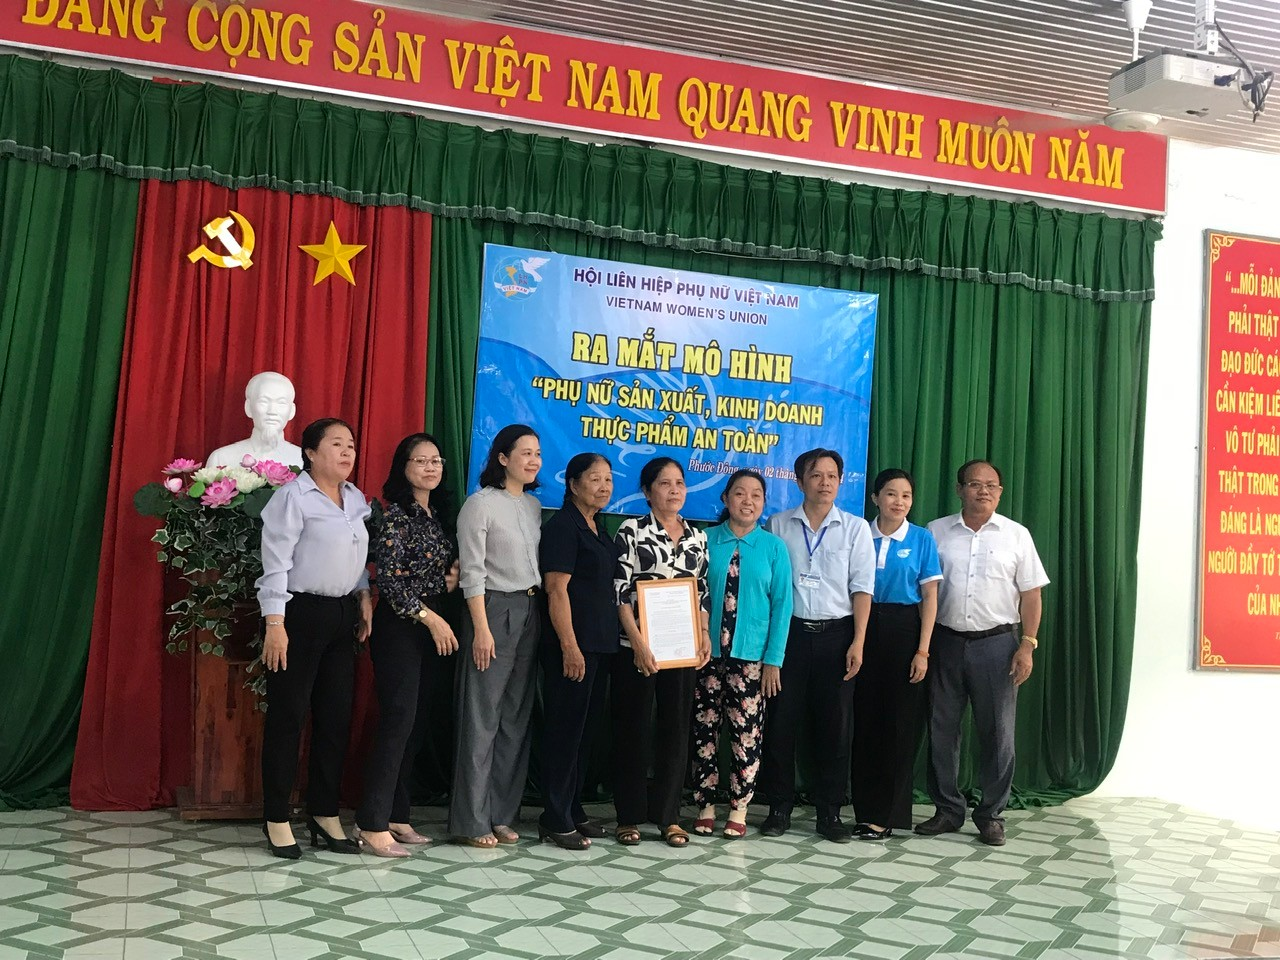 Trung ương Hội Liên hiệp phụ nữ Việt Nam:  Ra mắt mô hình “Phụ nữ sản xuất- kinh doanh thực phẩm an toàn” tại xã Phước Đông